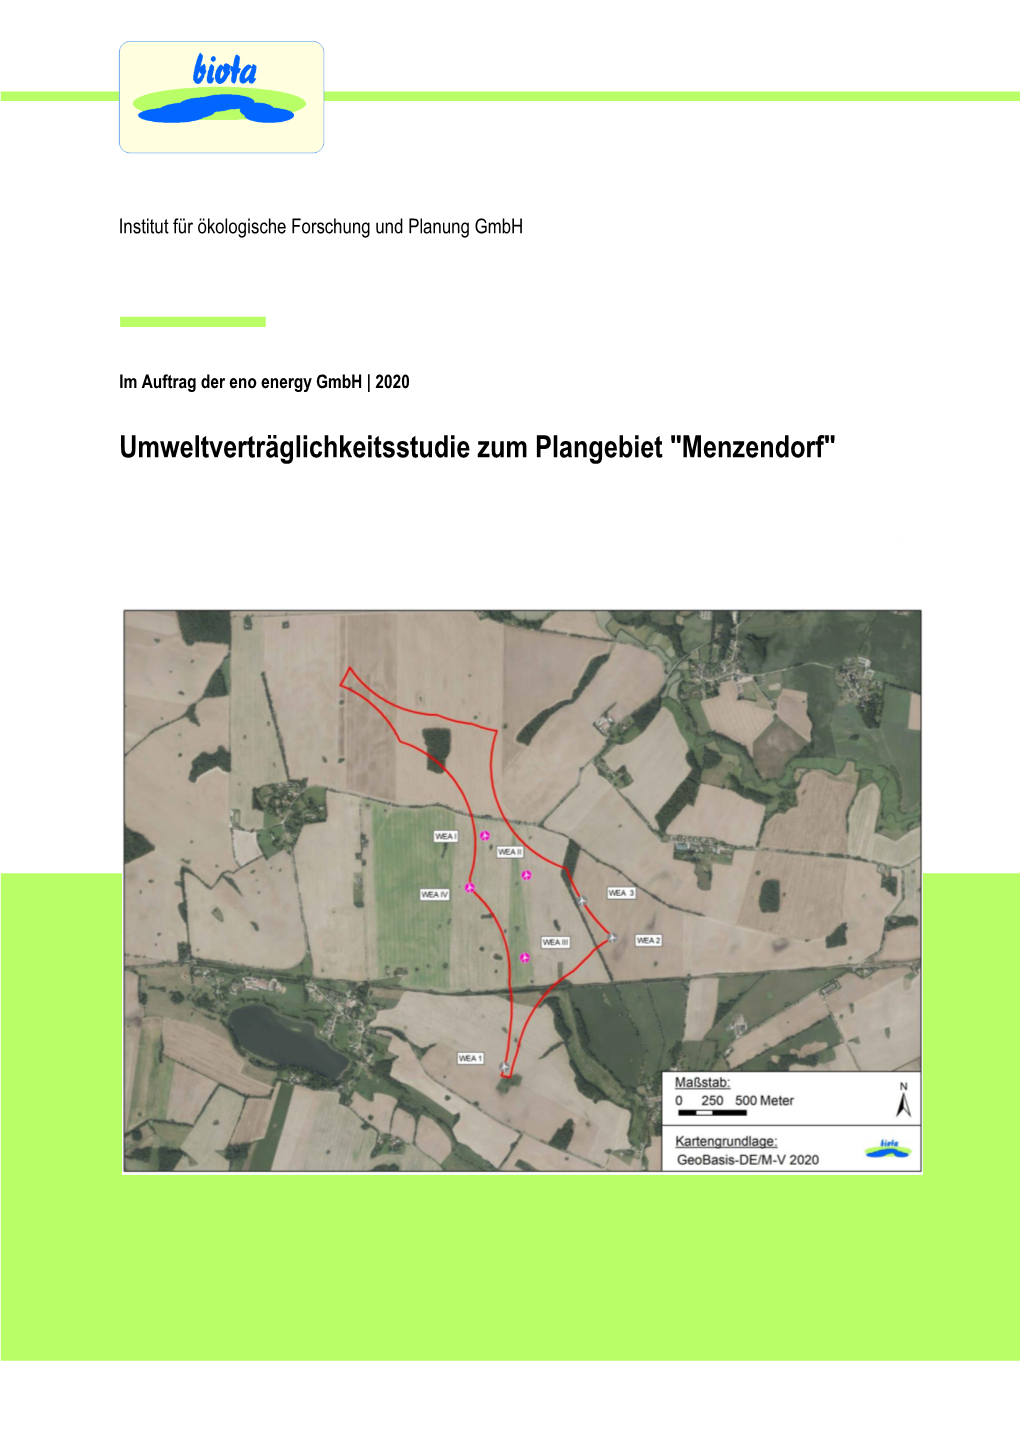 Umweltverträglichkeitsstudie Zum Plangebiet "Menzendorf"